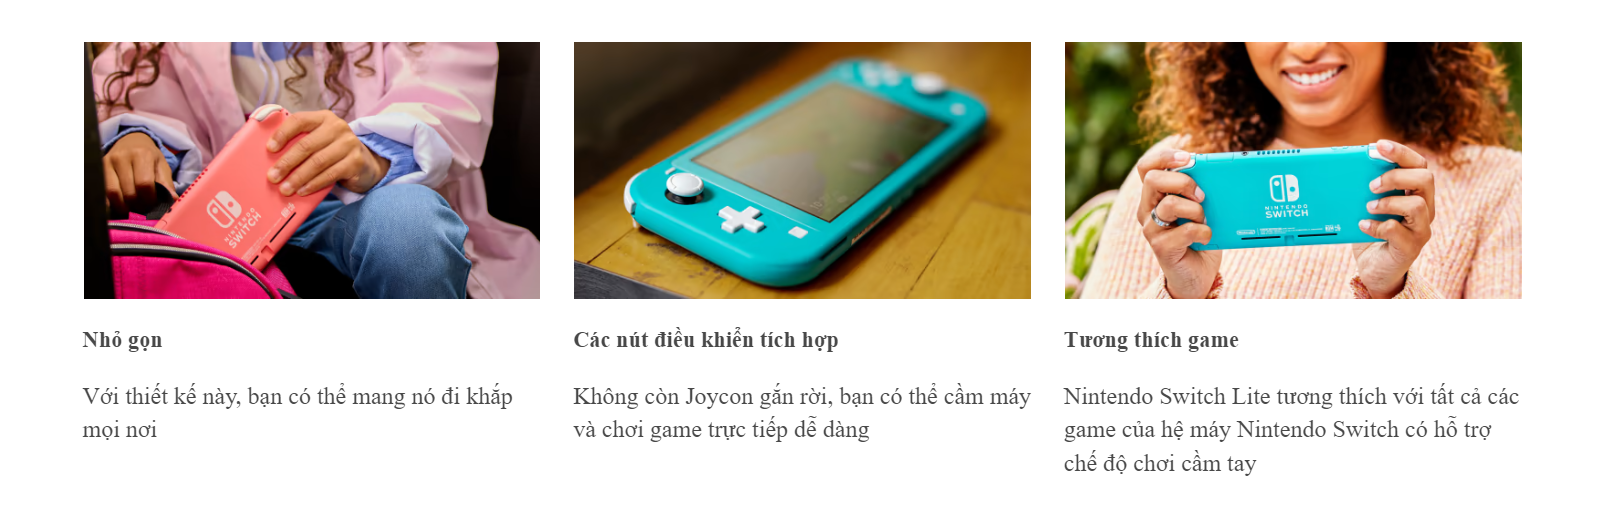 Máy chơi game Nintendo Switch Lite - Blue - Màu xanh blue 3